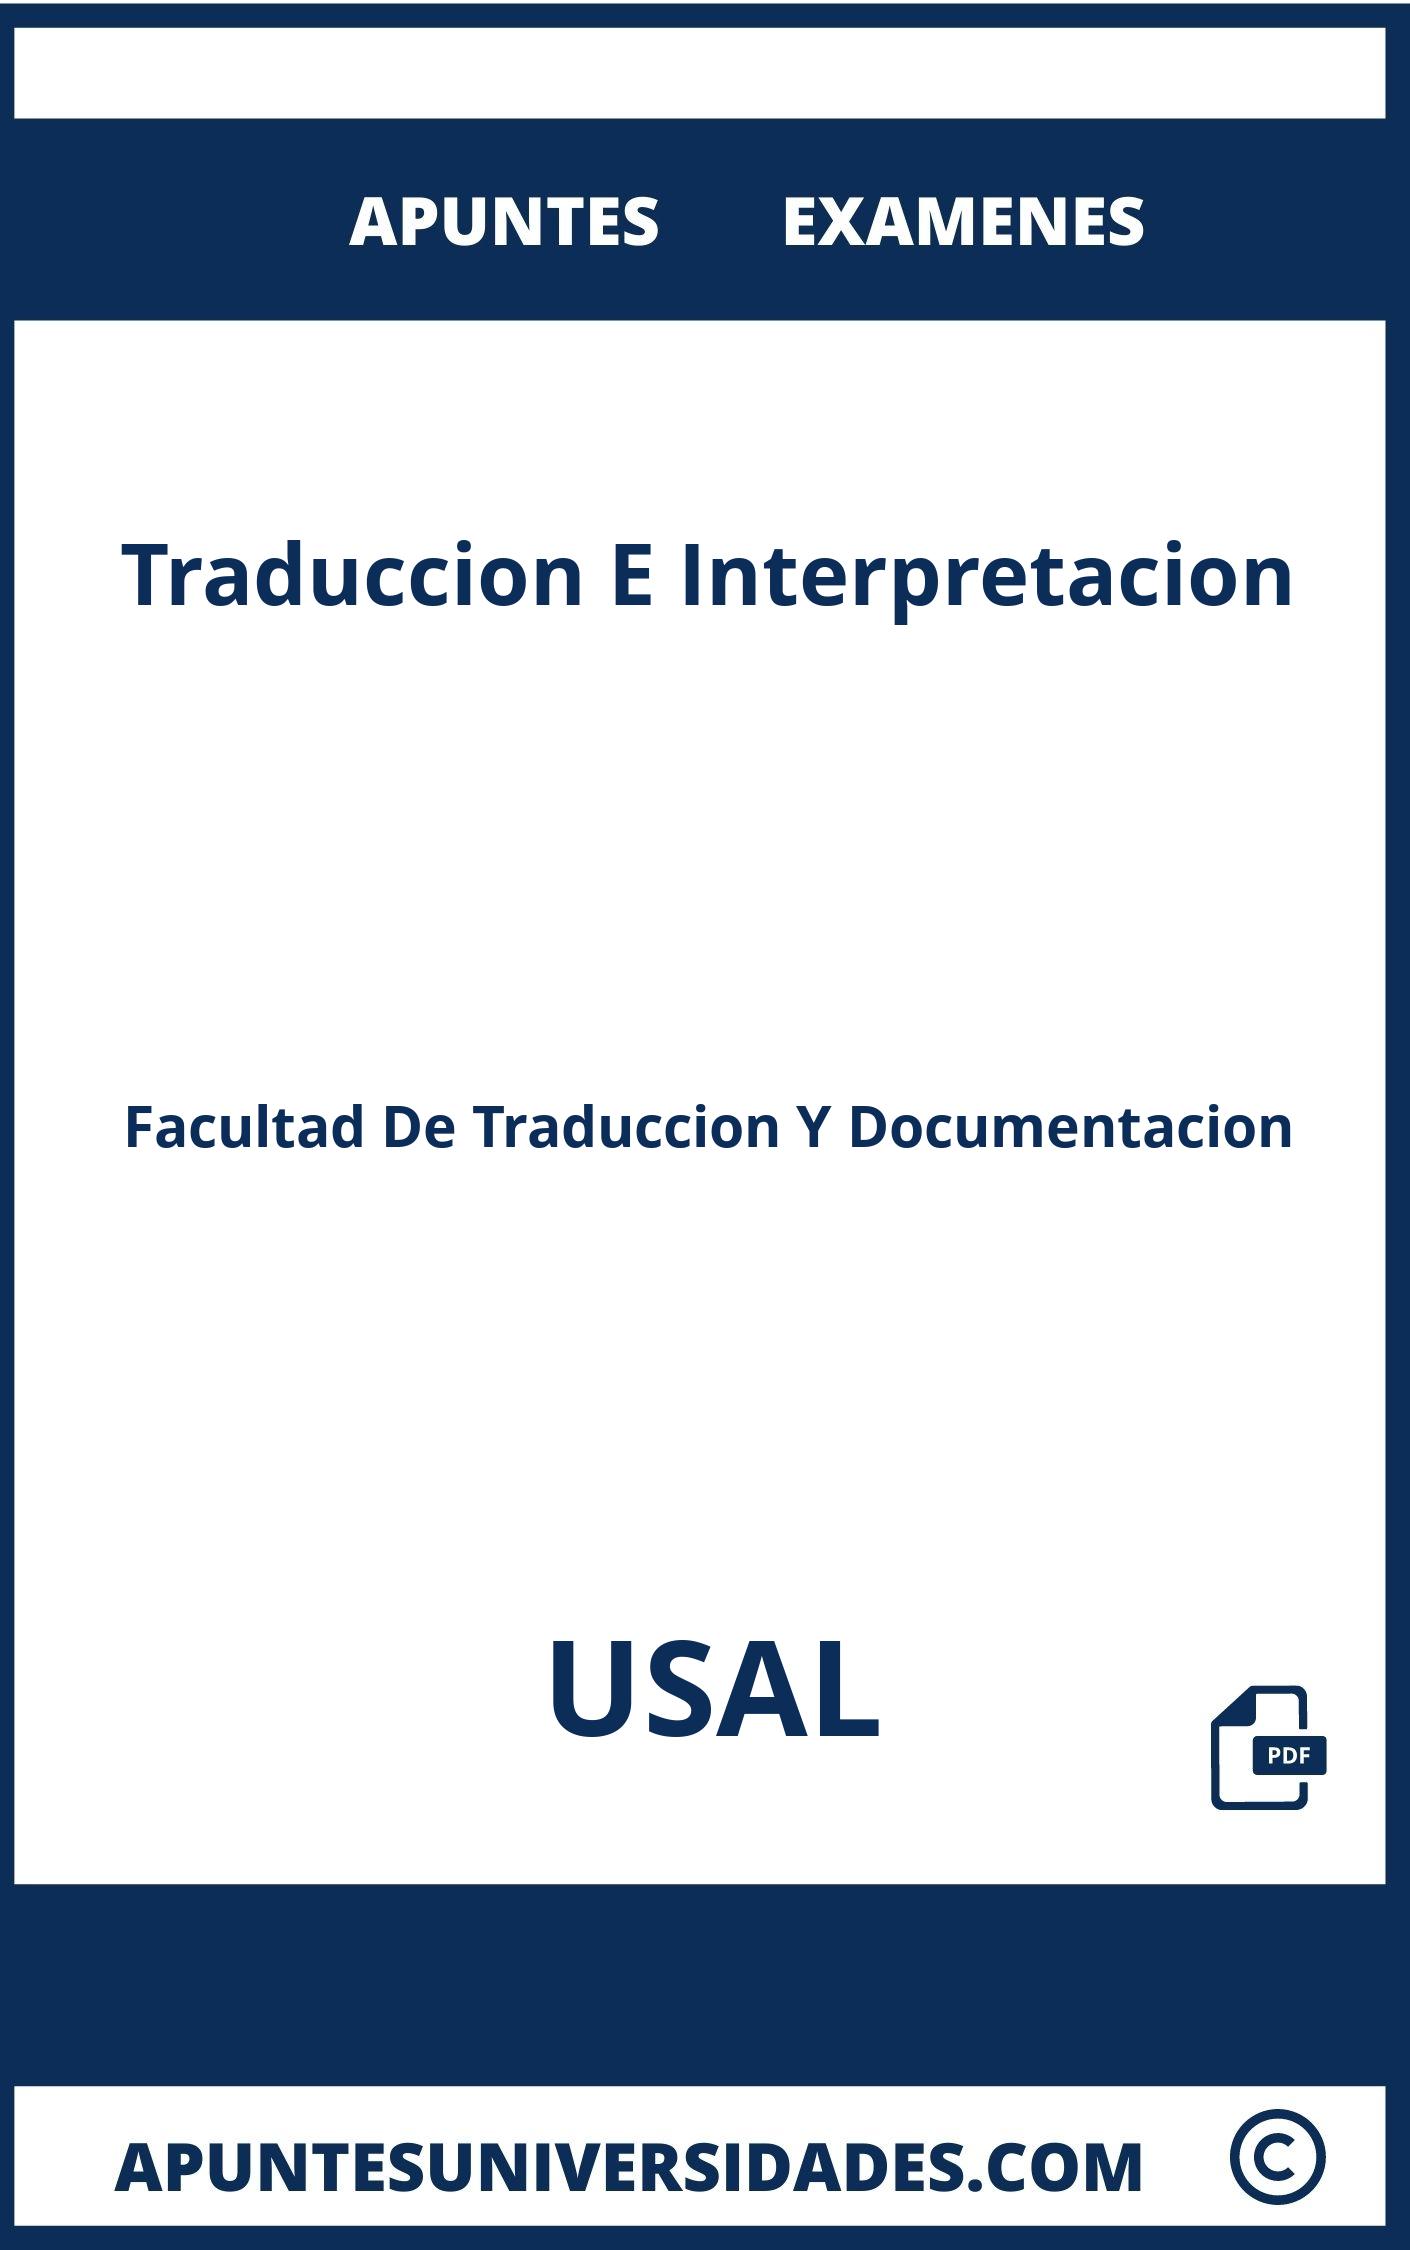 Traduccion E Interpretacion USAL Apuntes Examenes